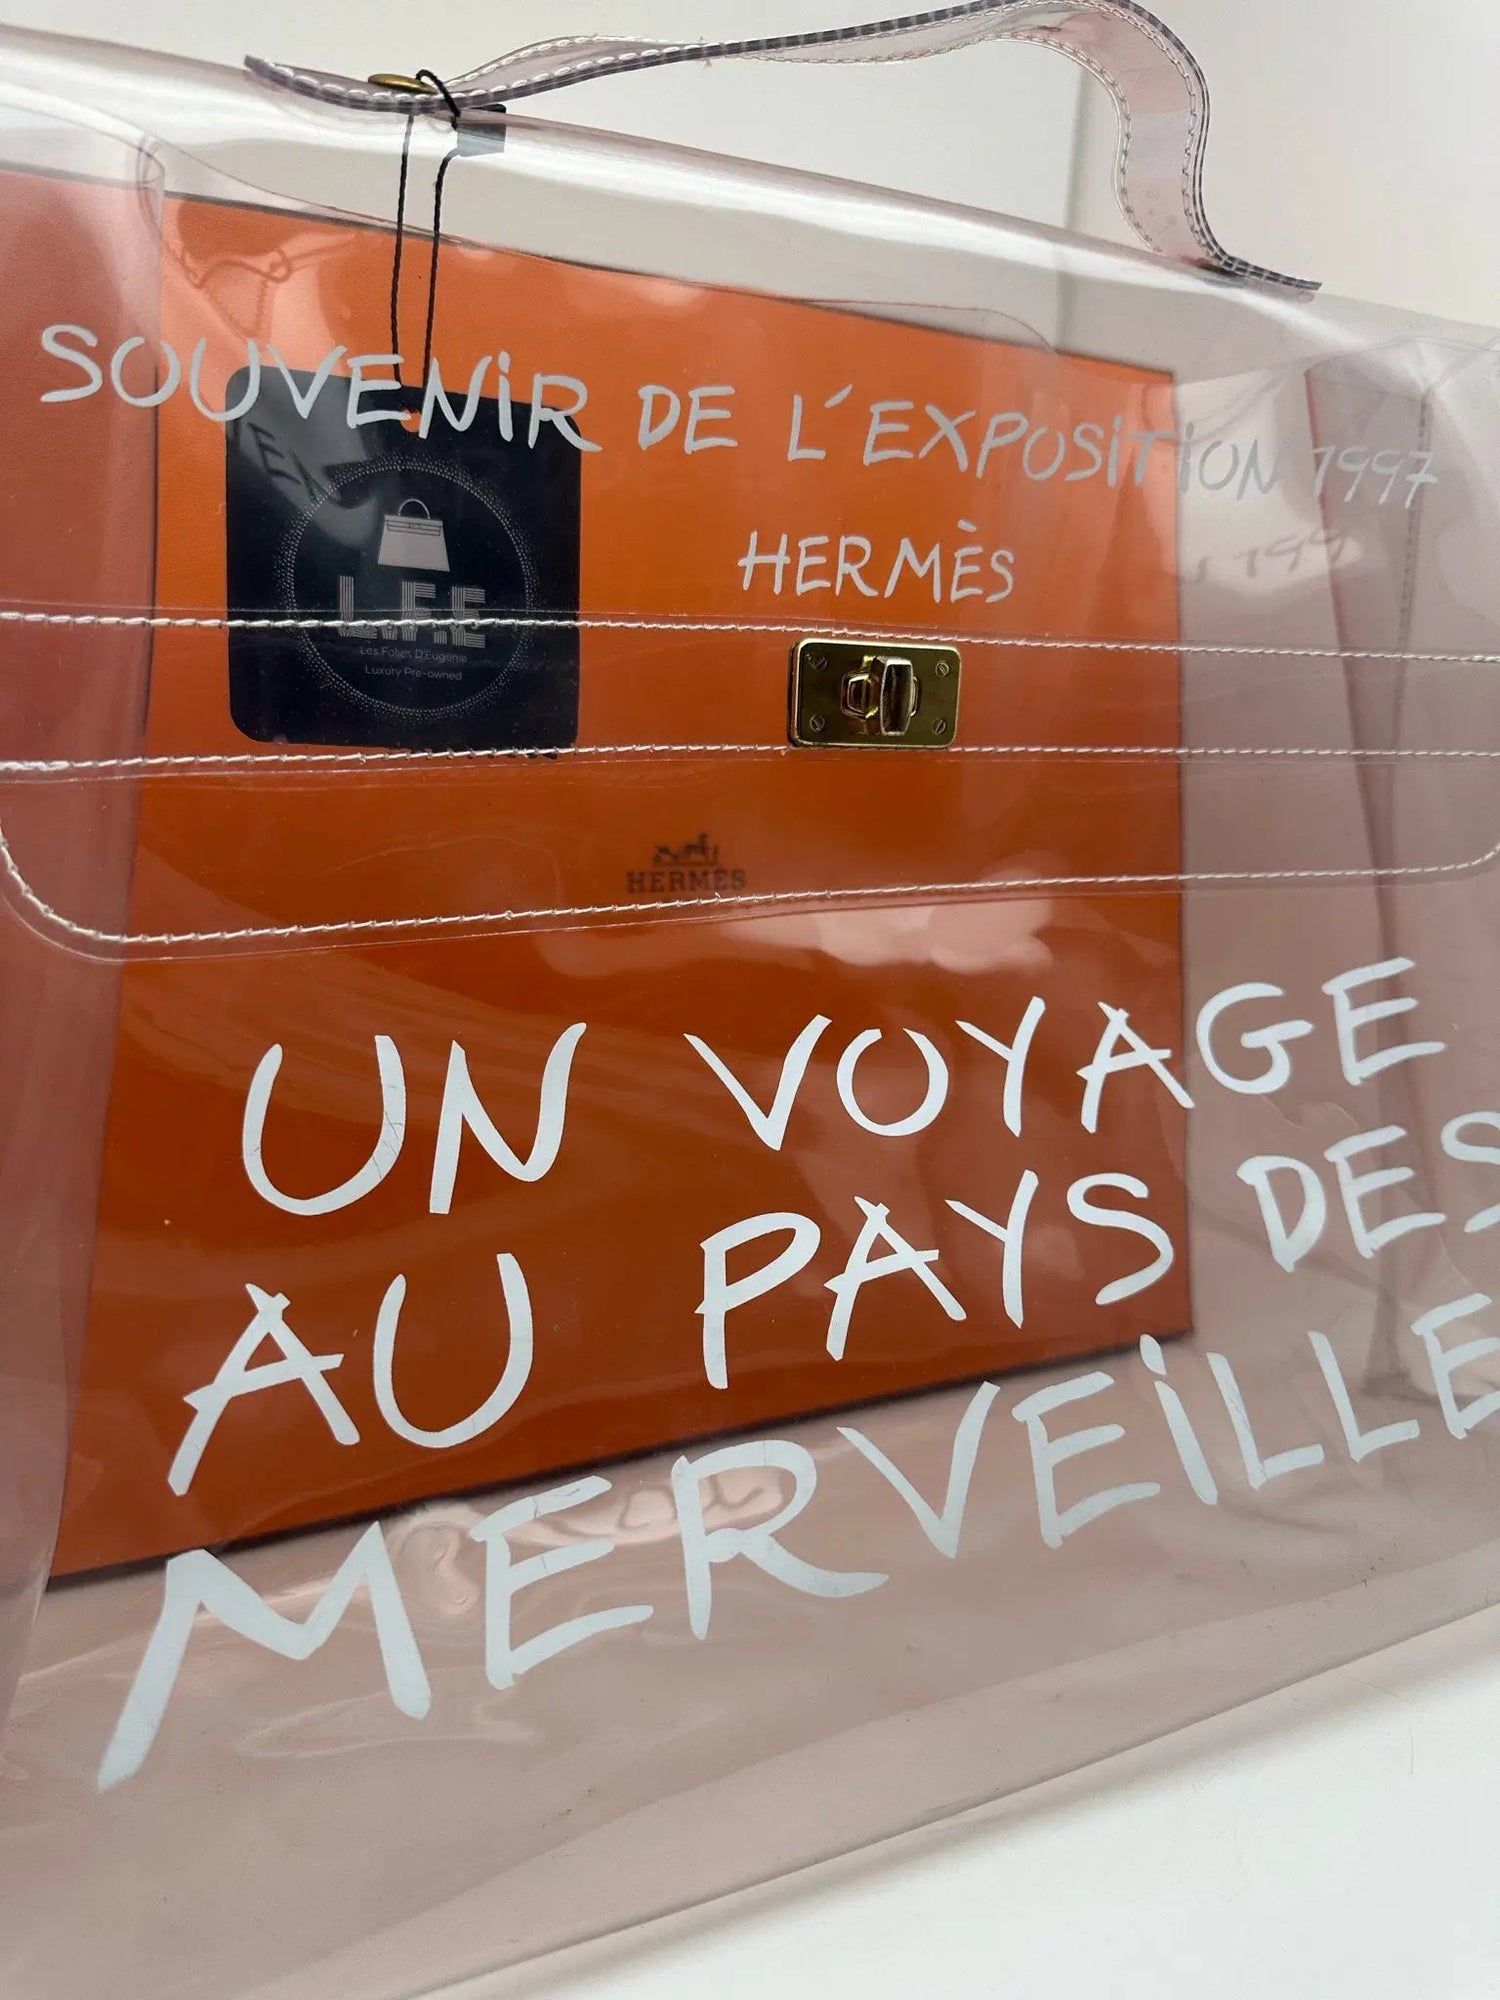 Hermès - Sac « Un voyage au pays des Merveilles » - Les Folies d&